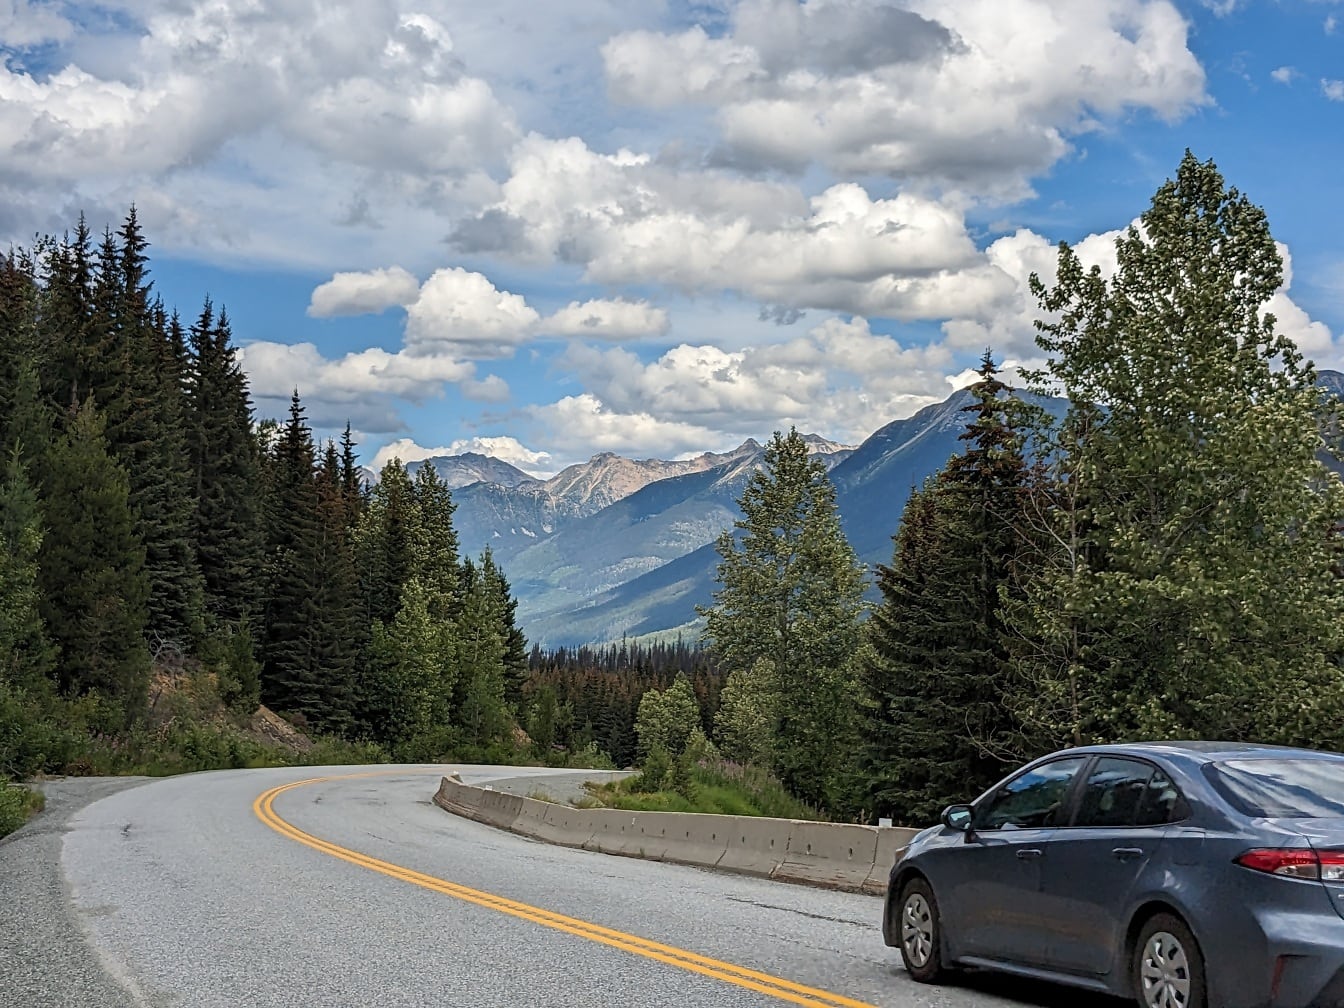 Chiếc xe sedan kim loại màu xanh đậm trên đường nhựa ở sườn núi